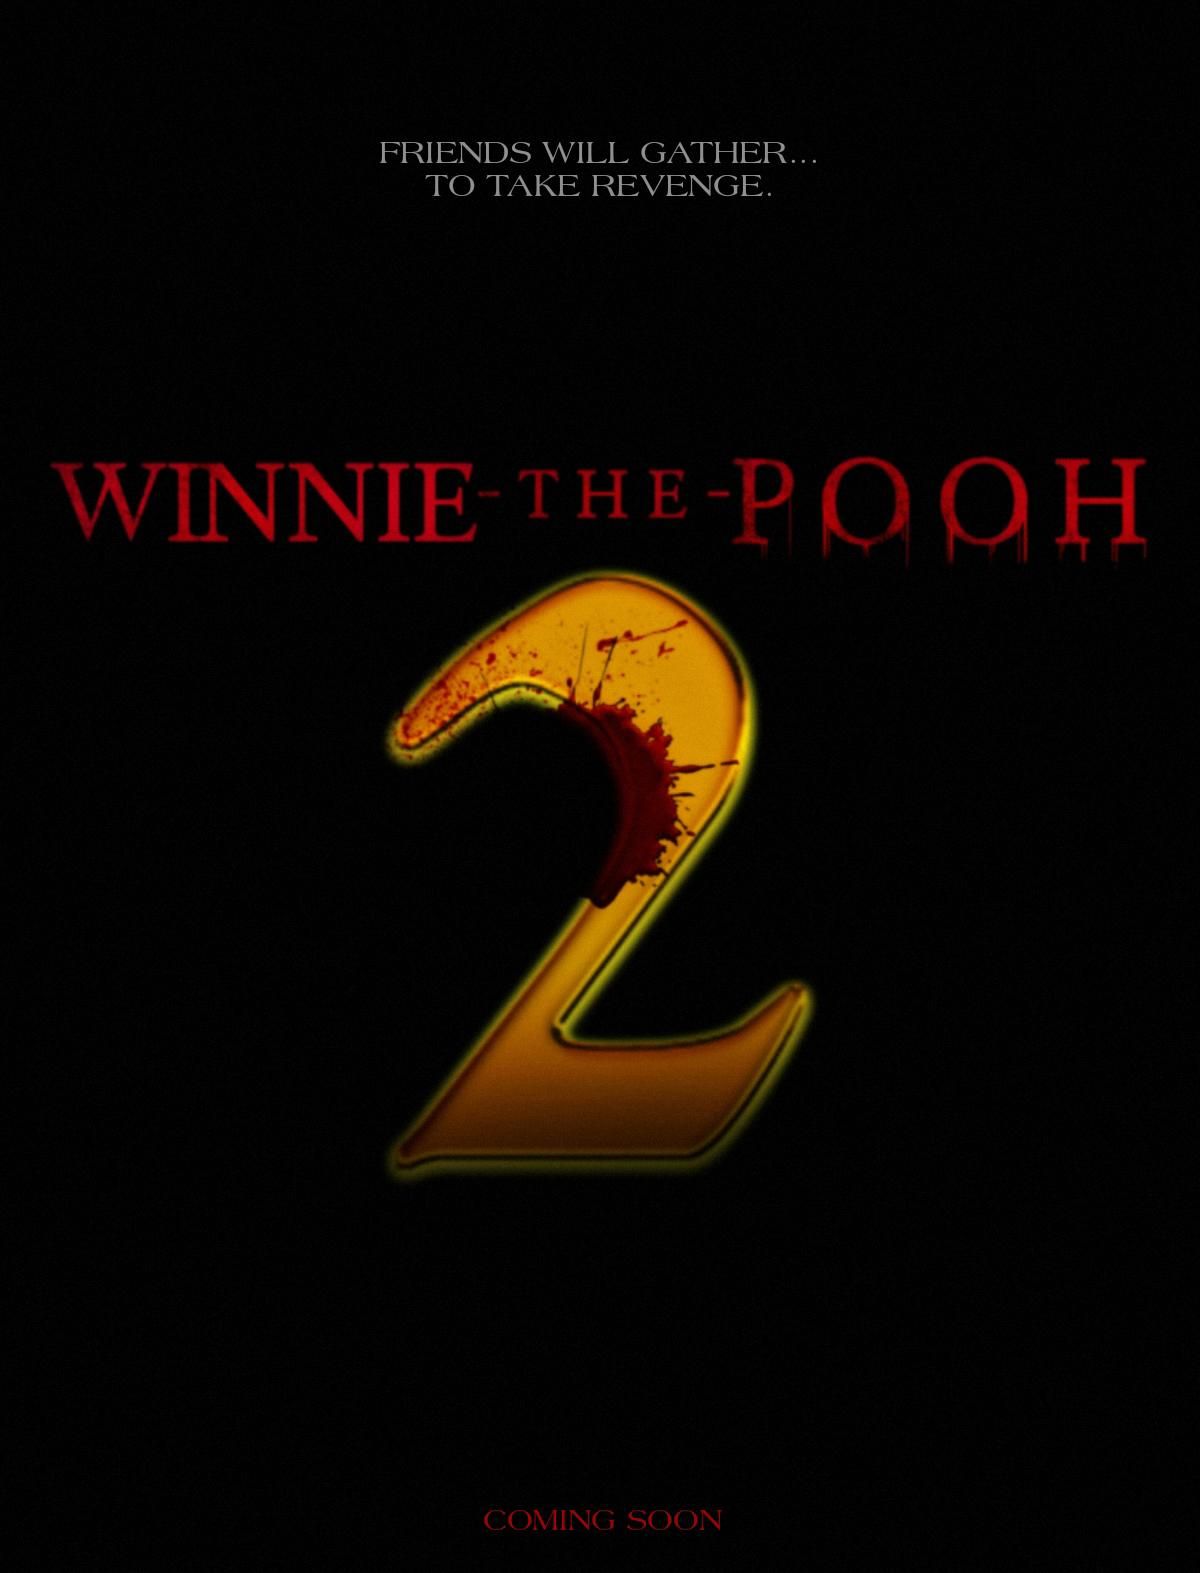 Avance de Winnie the Pooh Sangre y Miel 2 Póster